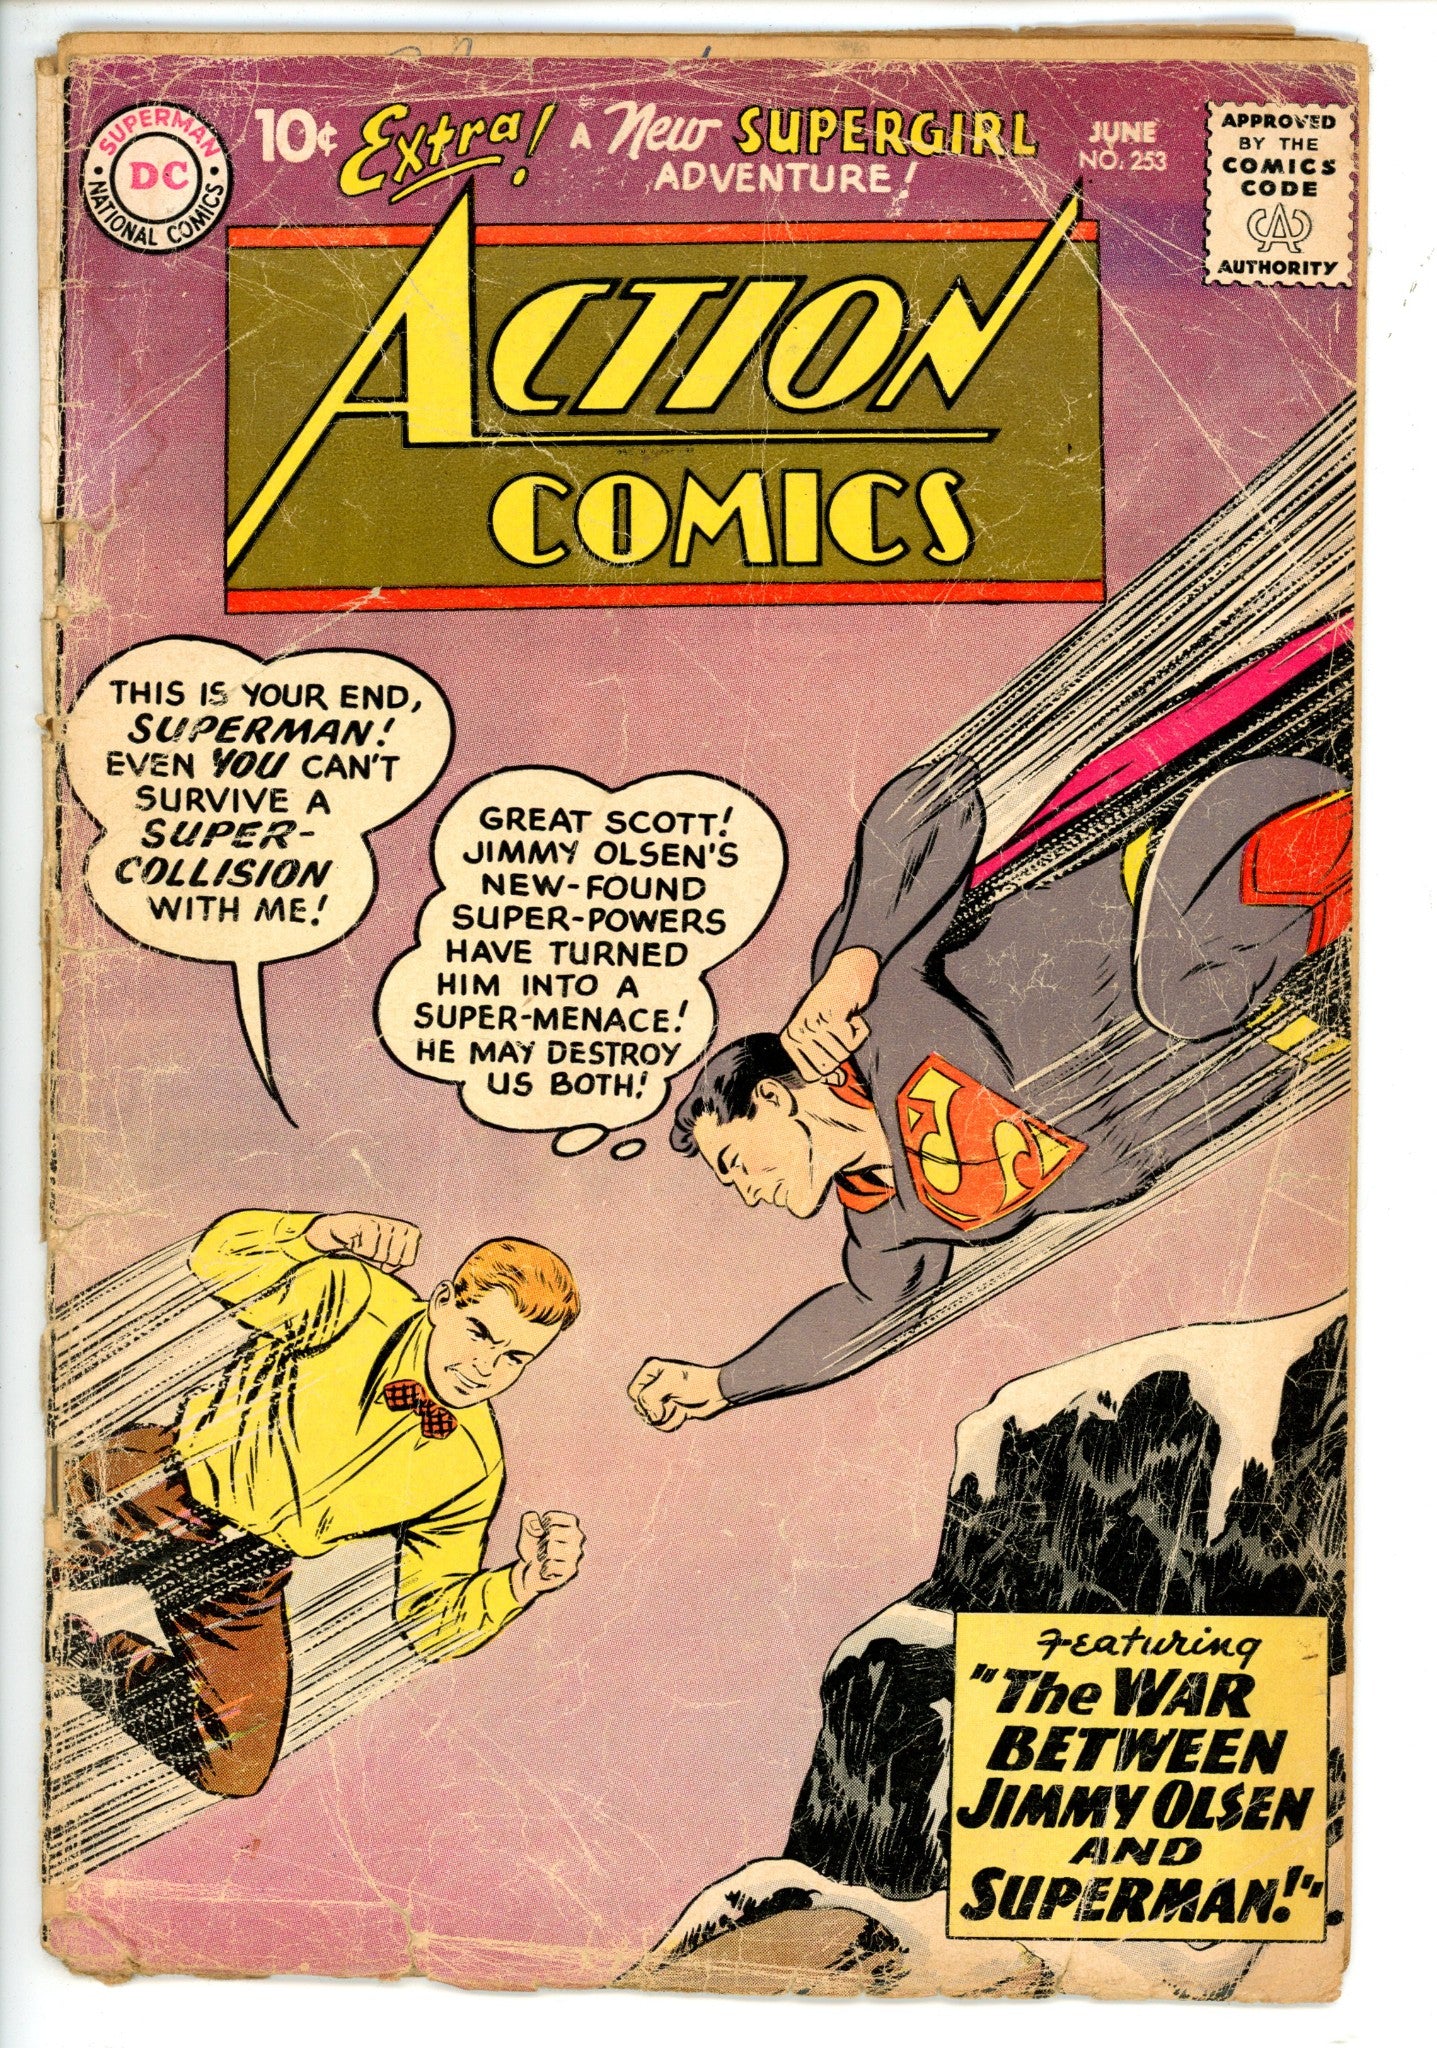 Action Comics Vol 1 253 FR/GD